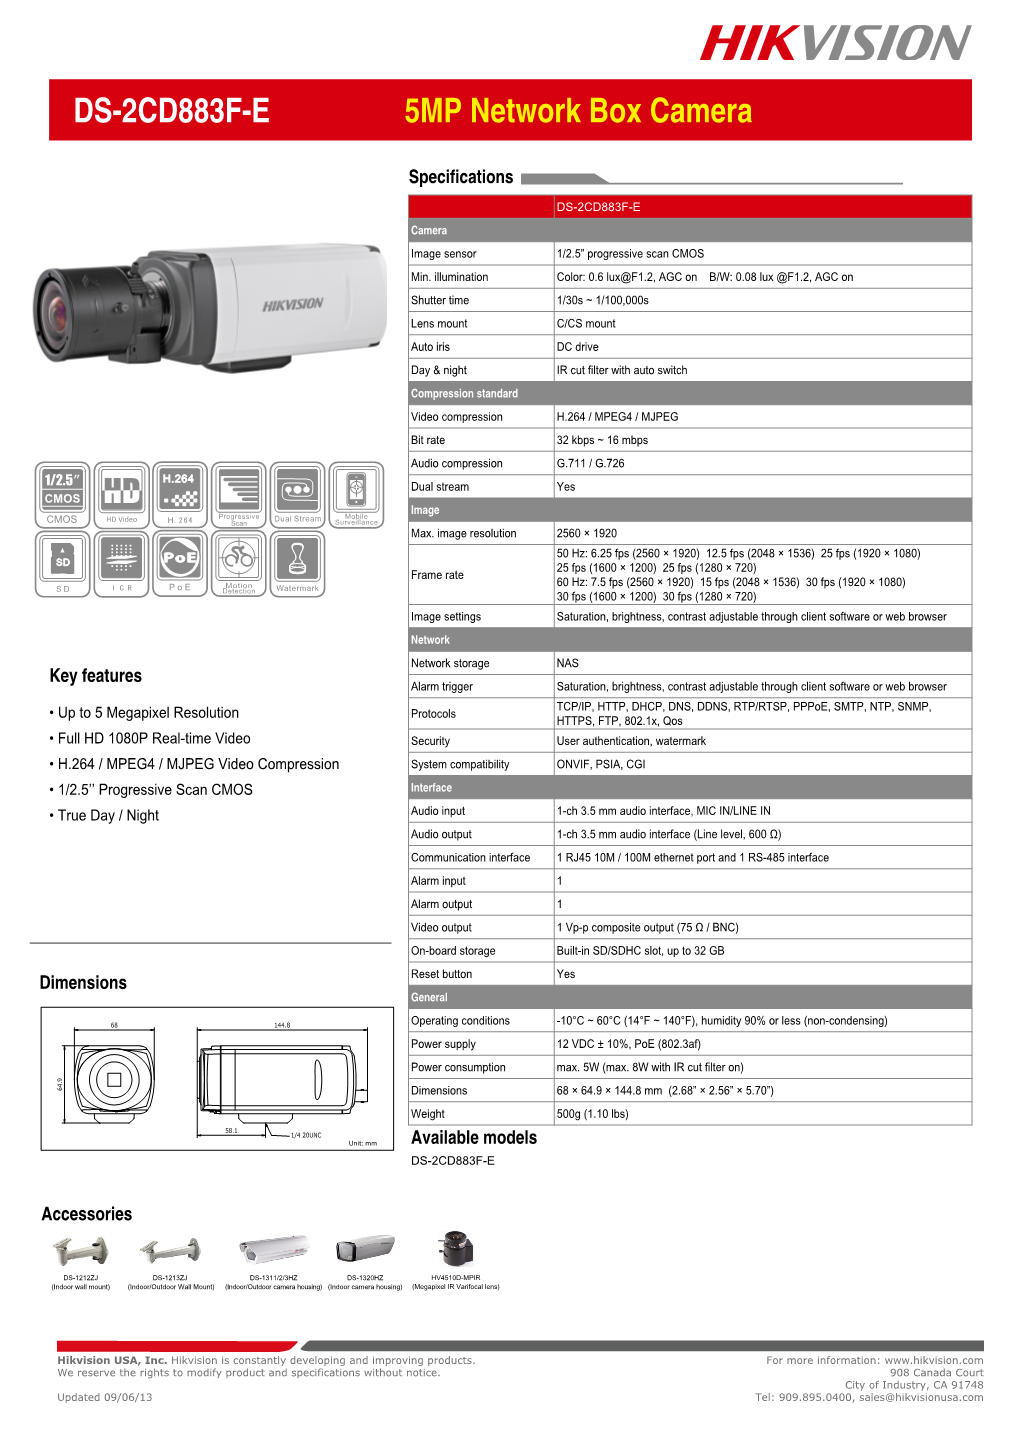 DS-2CD883F-E 5MP Network Box Camera